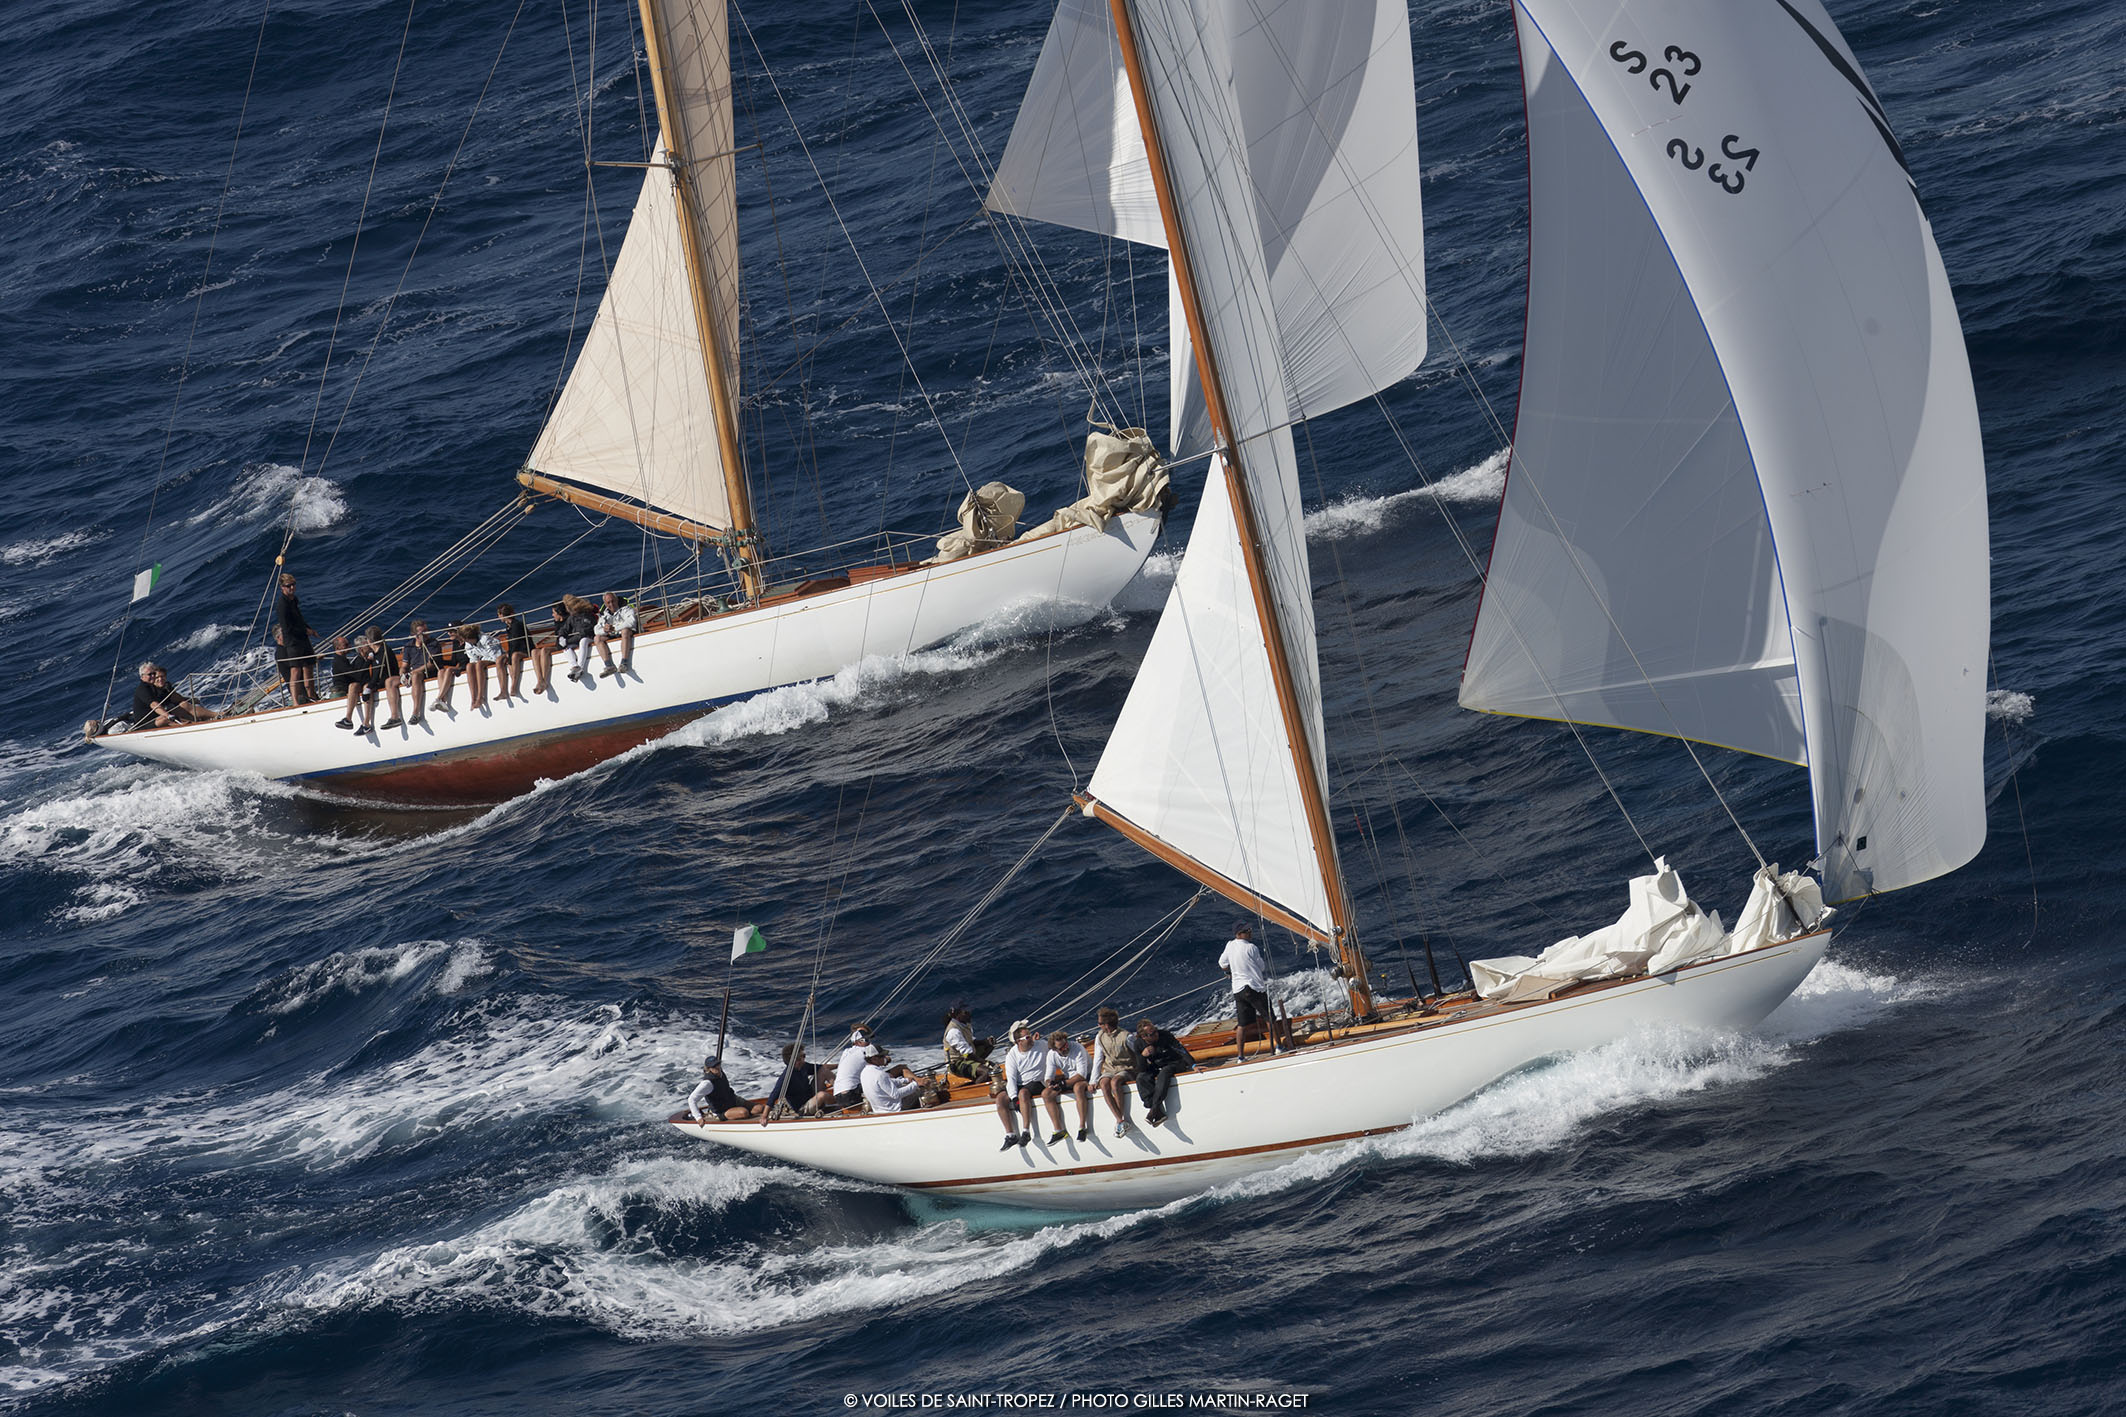 periode Ray Salme Voiles de Saint-Tropez 2017: Mariska vainqueur - Yachting Classique